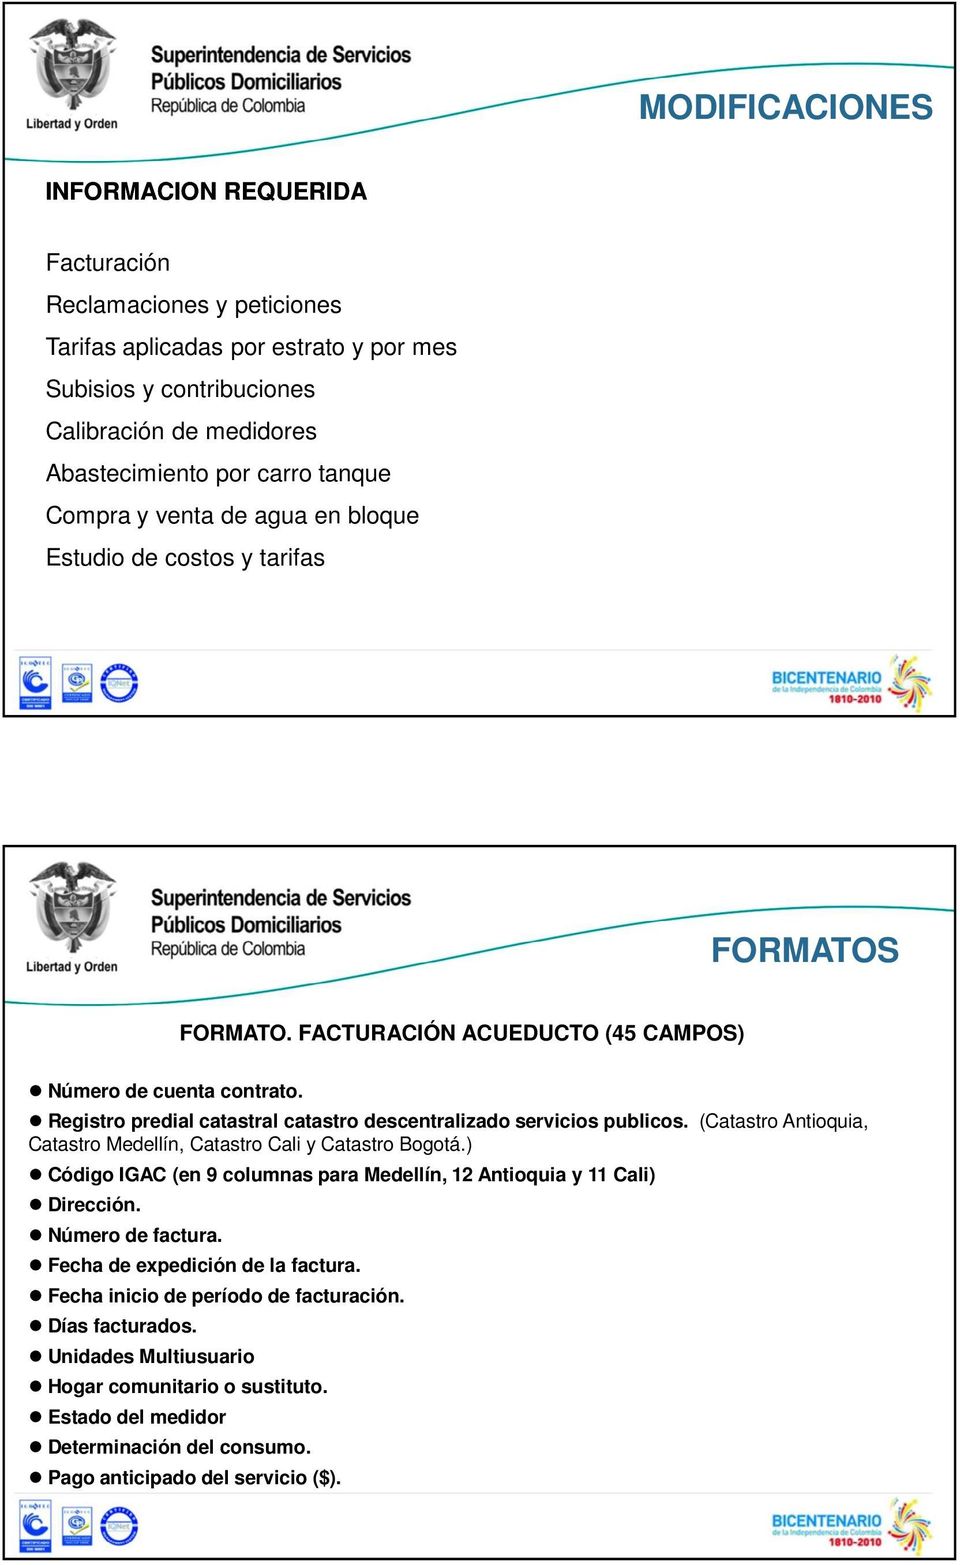 Registro predial catastral catastro descentralizado servicios publicos. (Catastro Antioquia, Catastro Medellín, Catastro Cali y Catastro Bogotá.